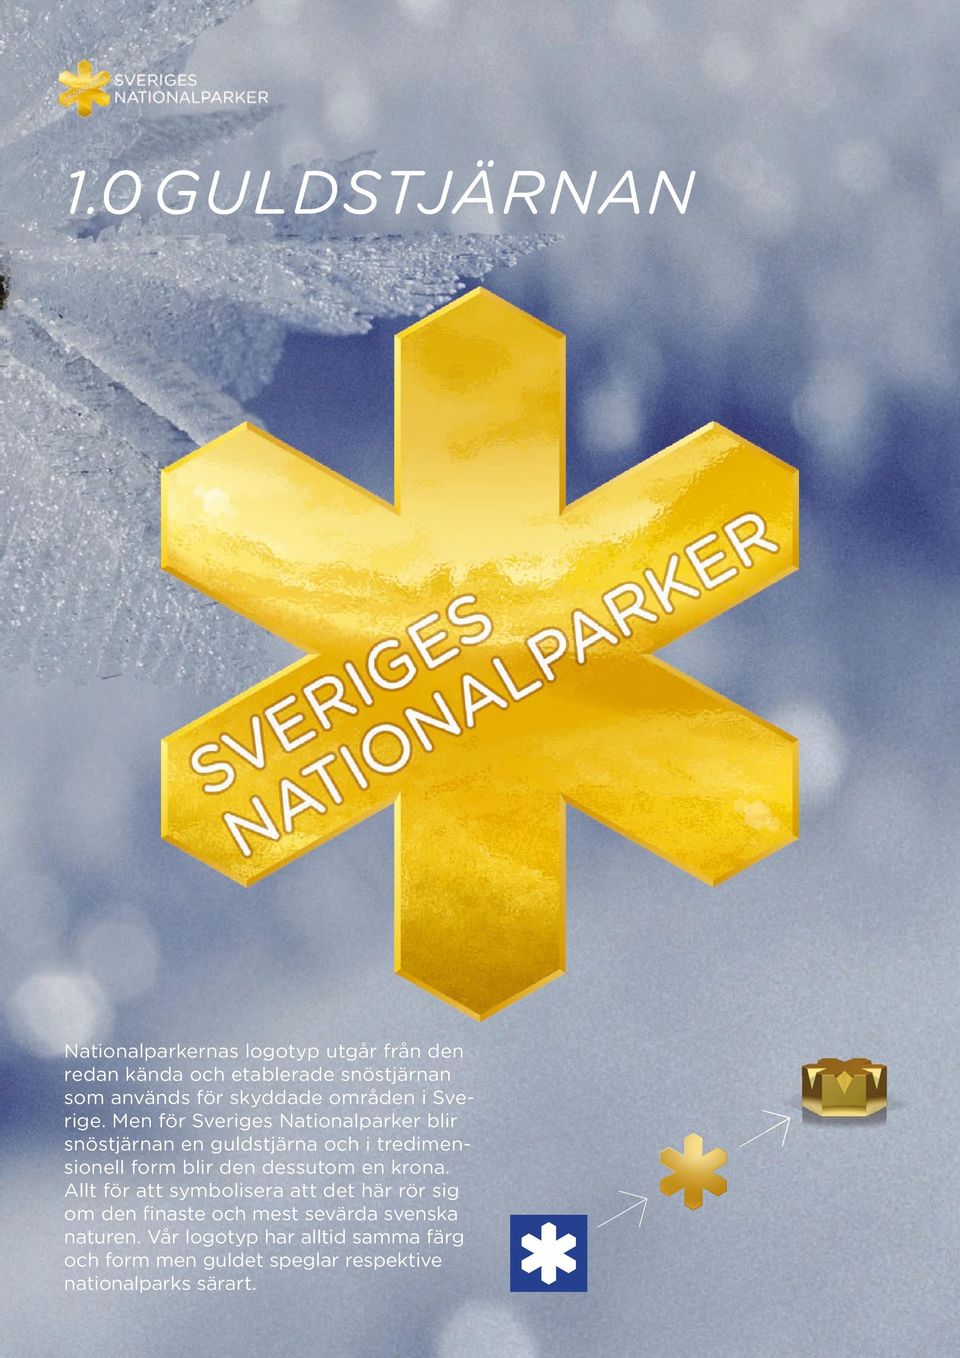 Men för Sveriges Nationalparker blir snöstjärnan en guldstjärna och i tredimensionell form blir den dessutom en